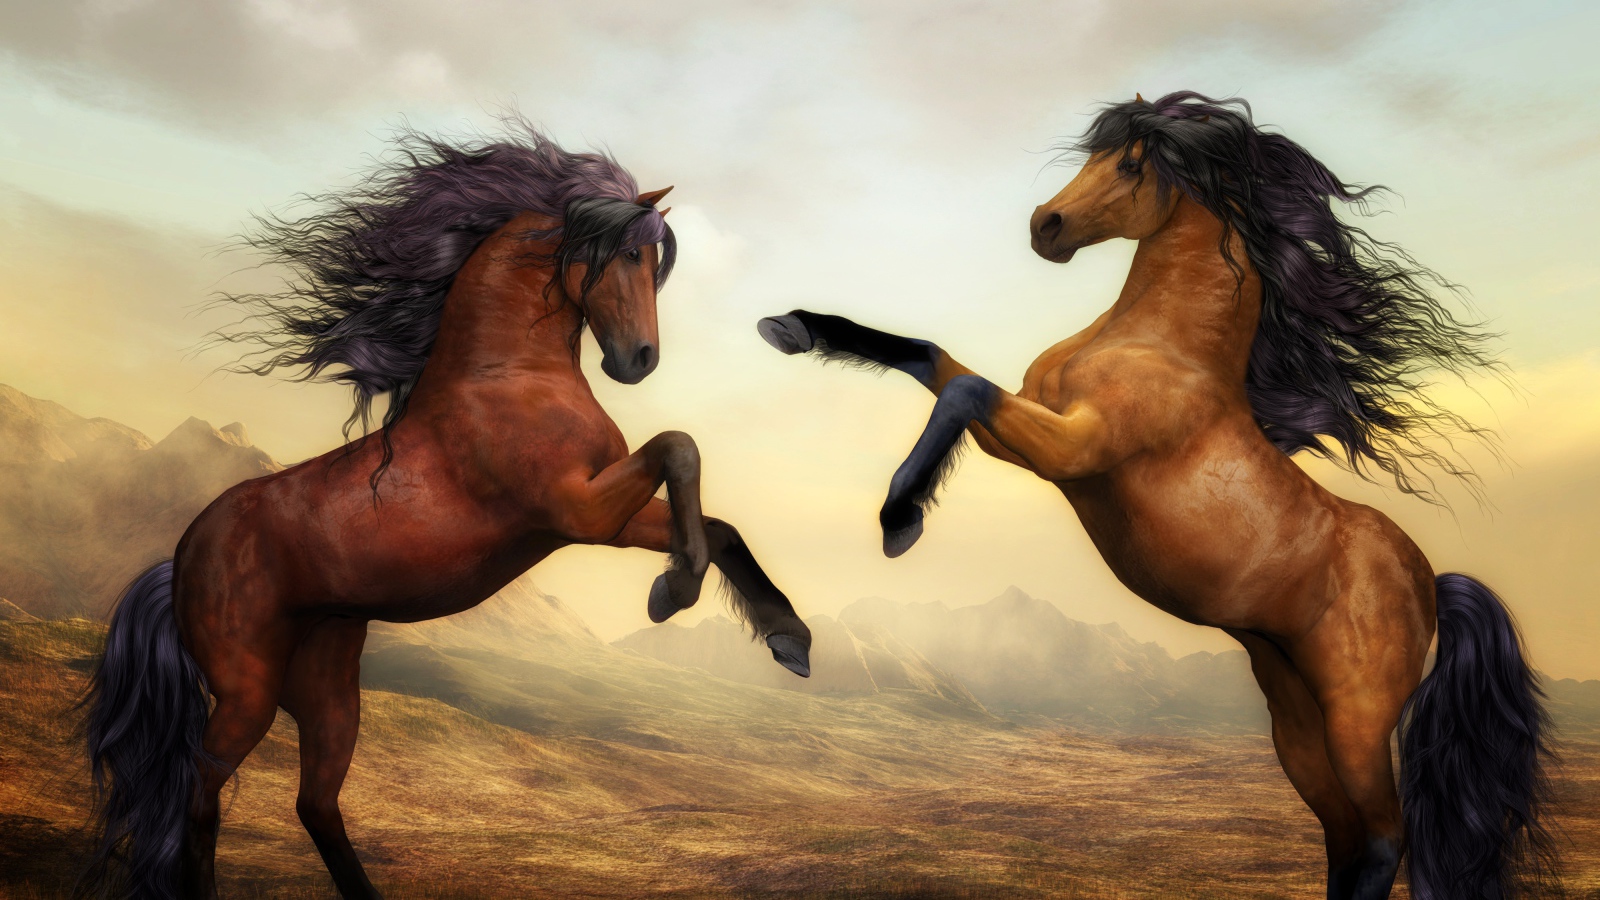 Две красивые нарисованные лошади